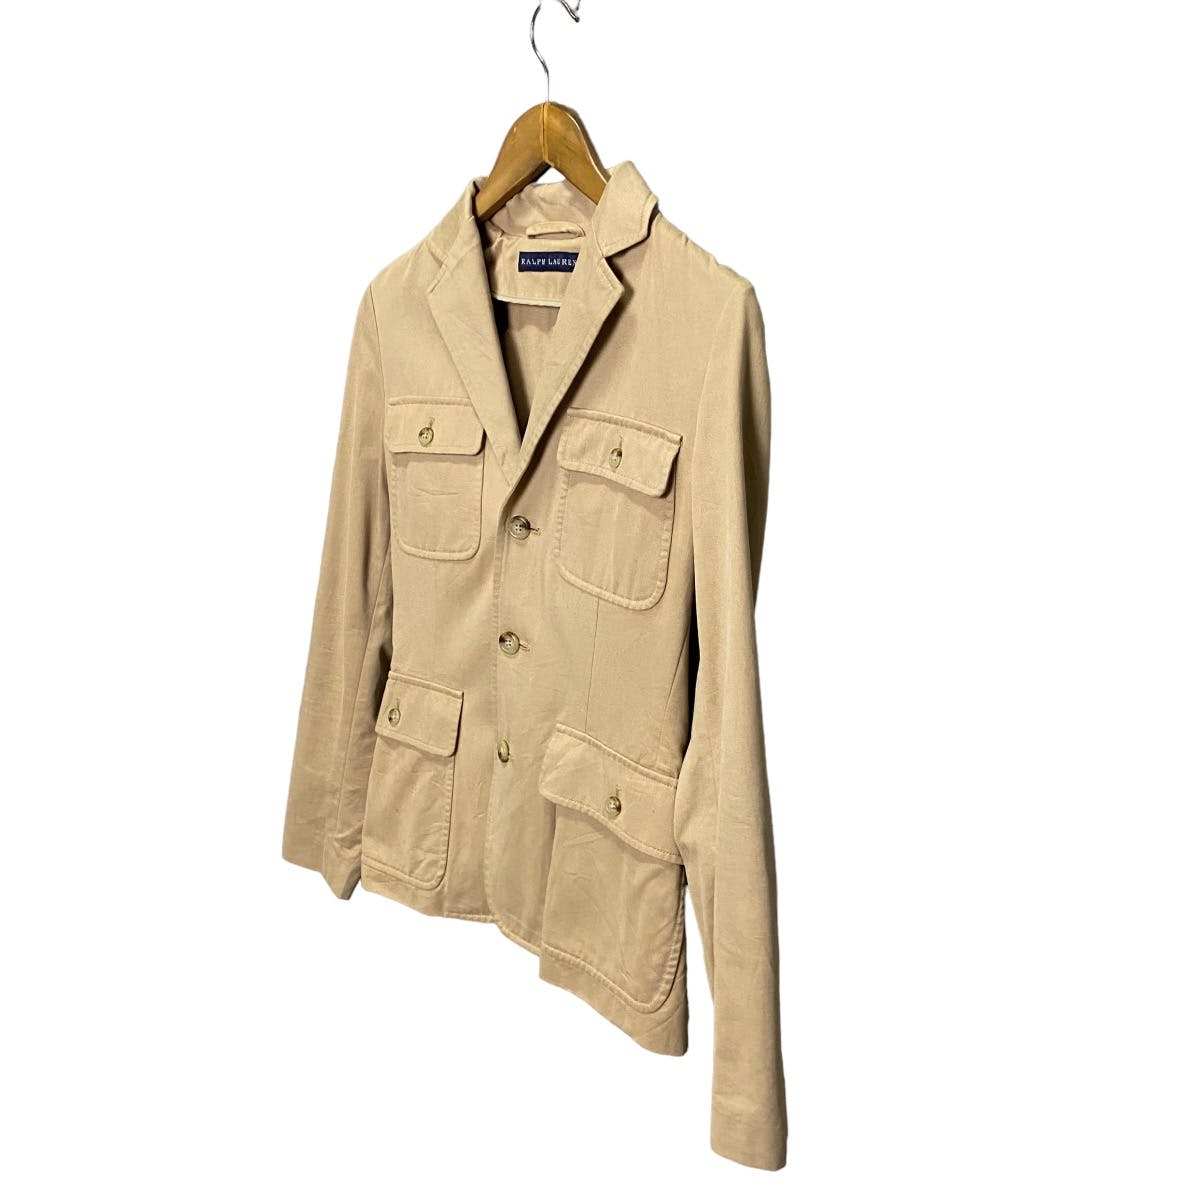 Ralph Lauren 4 pocket jacket - 3